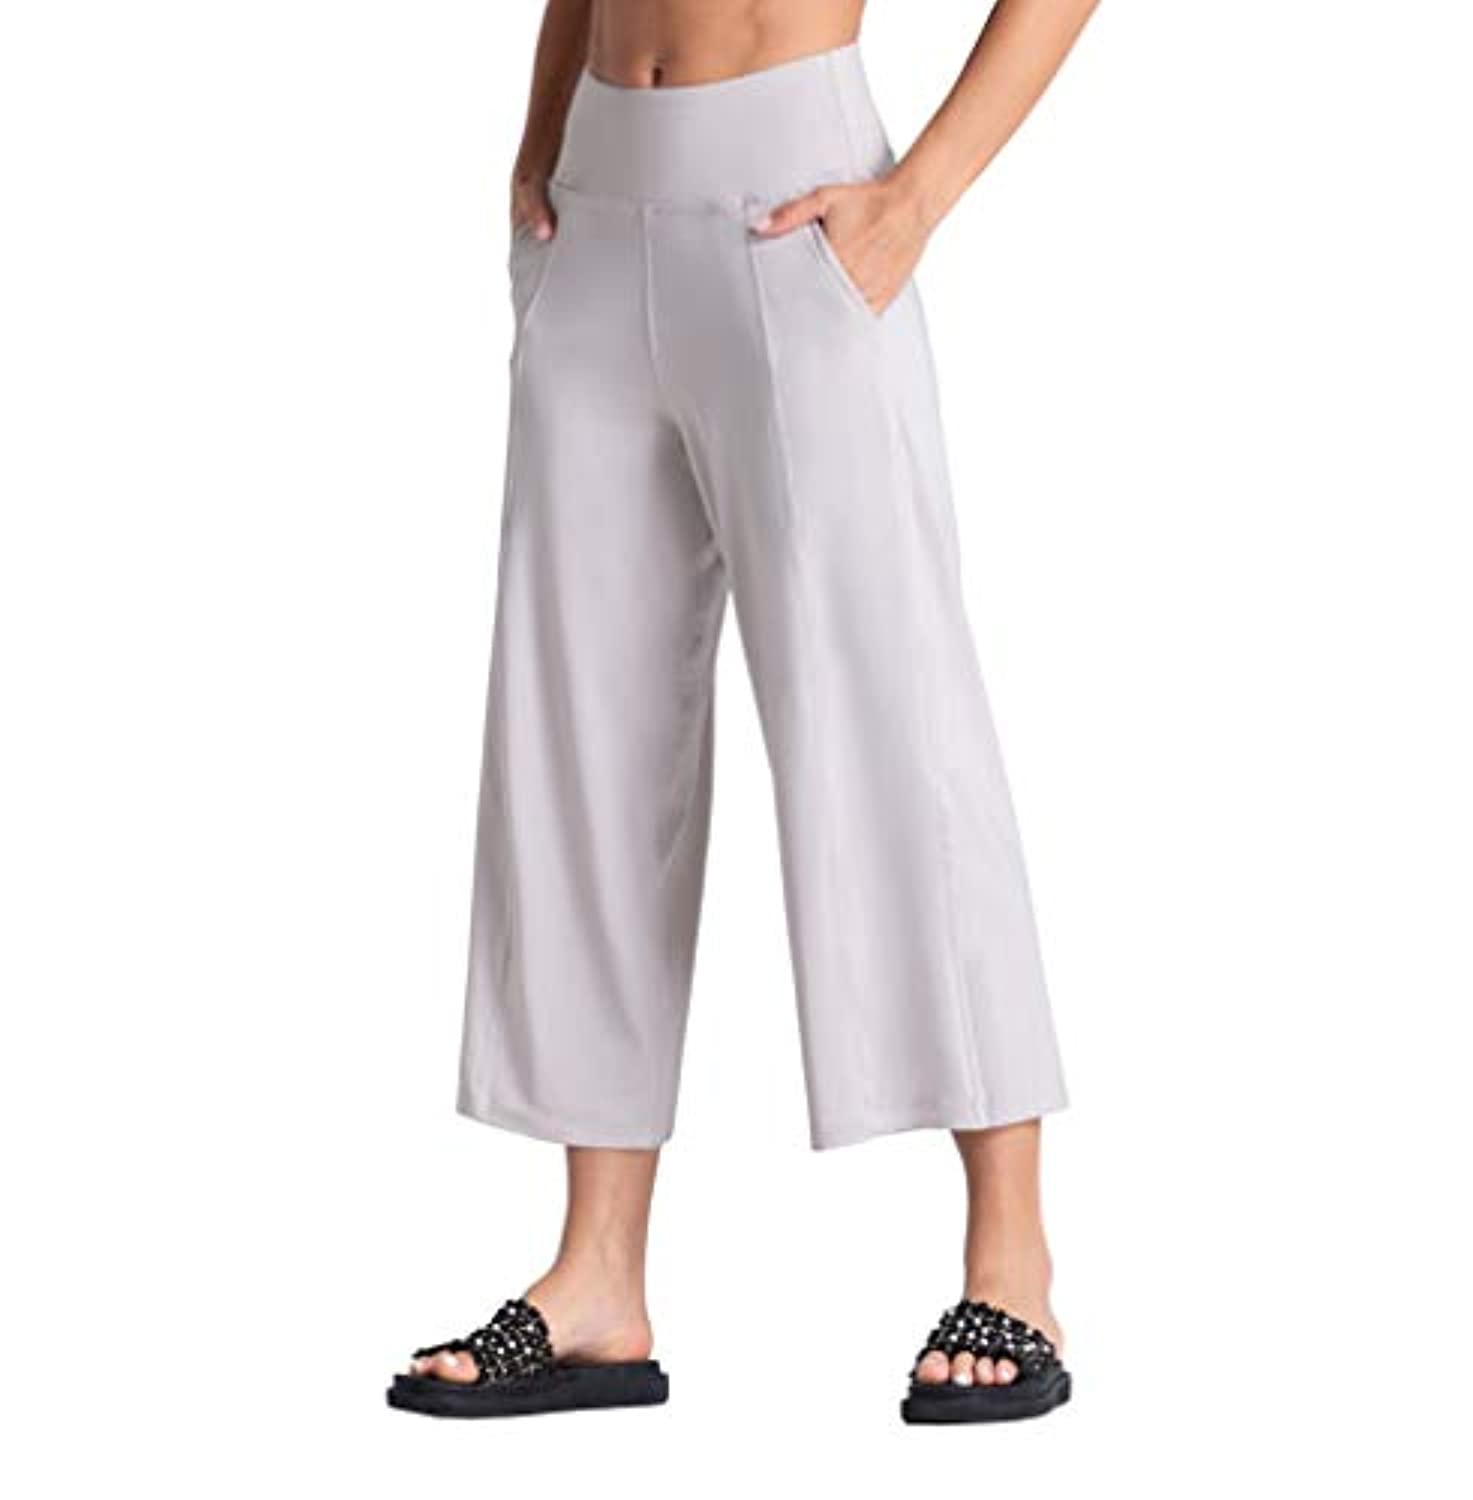 The Gym People - Pantalones capris para yoga, cintura alta, con